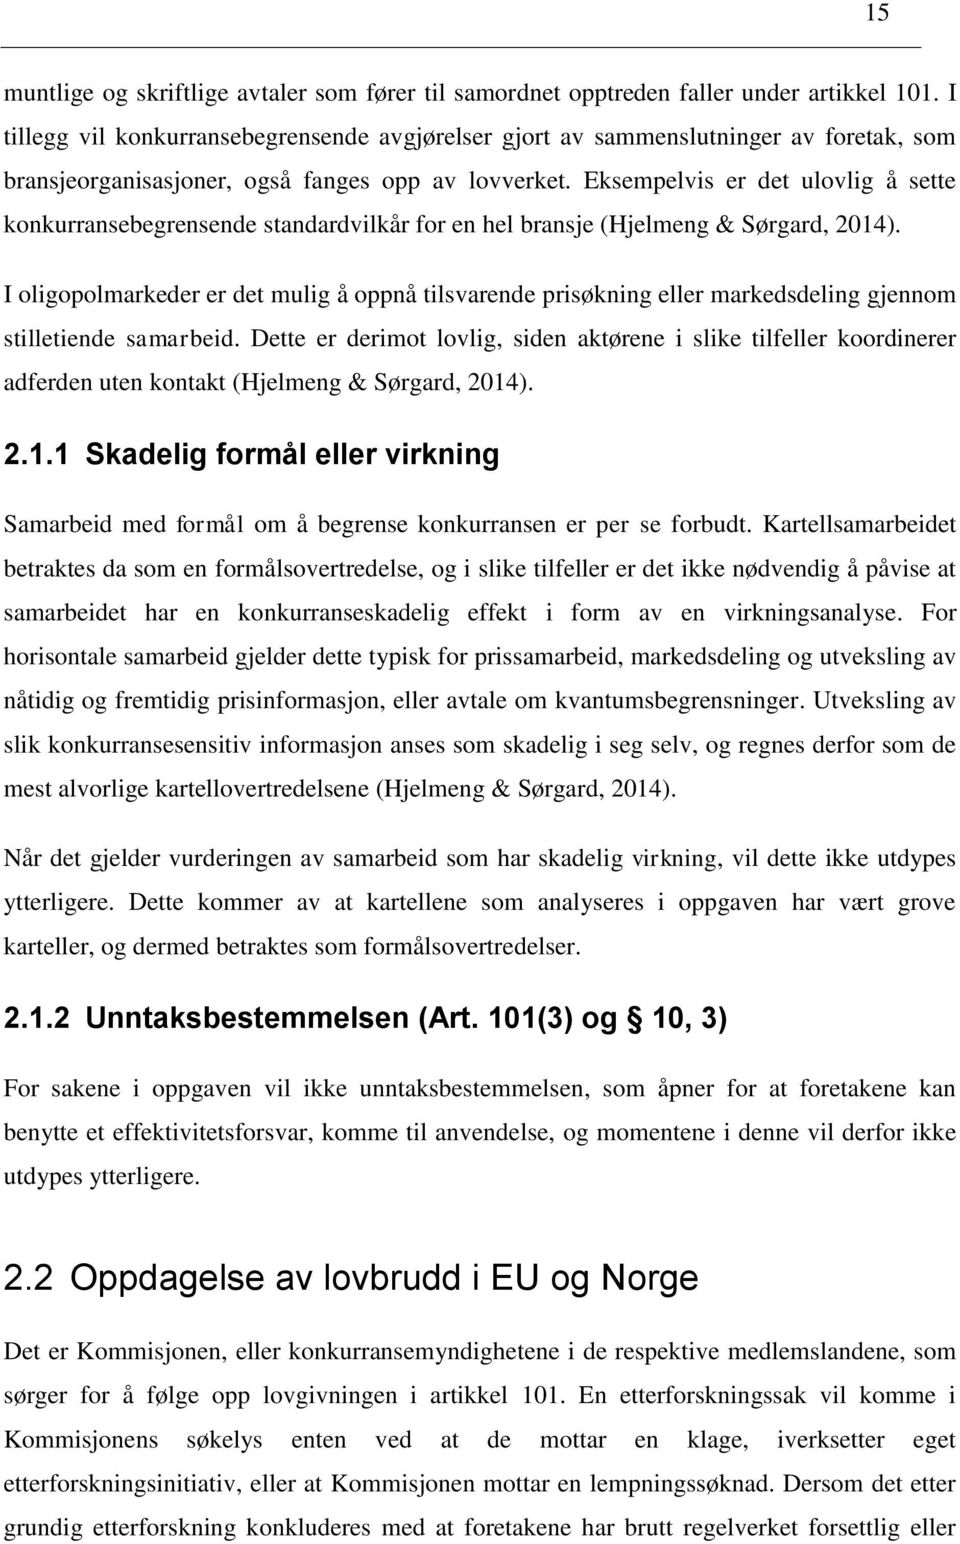 Eksempelvis er det ulovlig å sette konkurransebegrensende standardvilkår for en hel bransje (Hjelmeng & Sørgard, 2014).